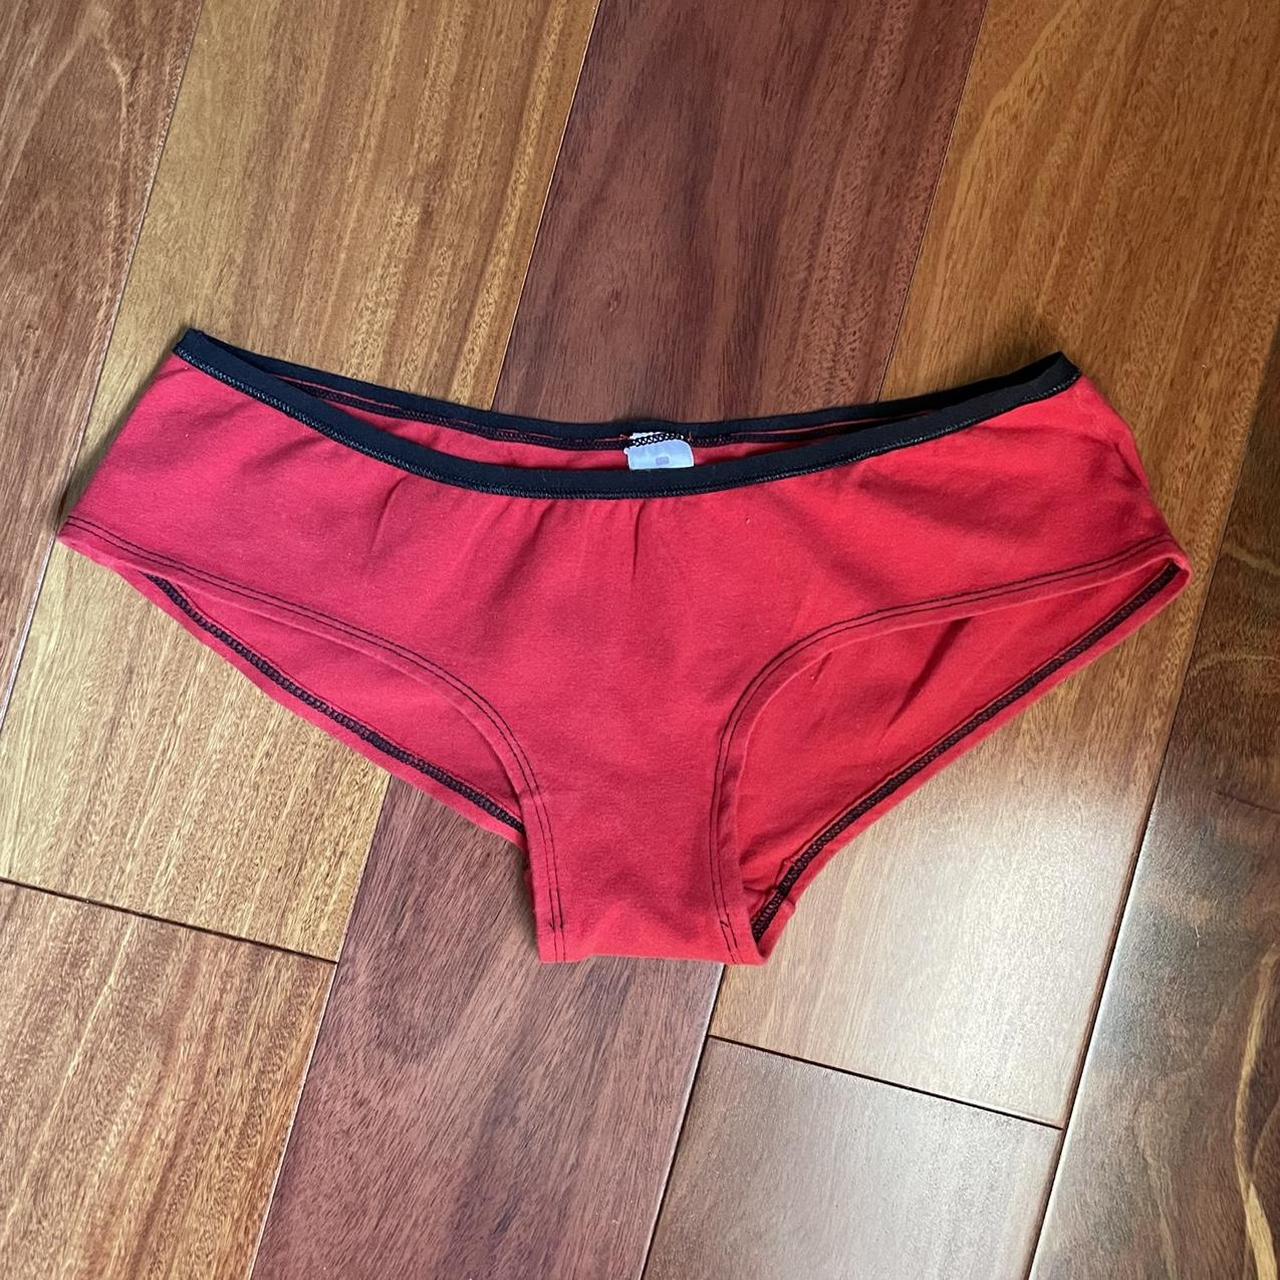 Rampage Women's Red and Black Underwear (4)